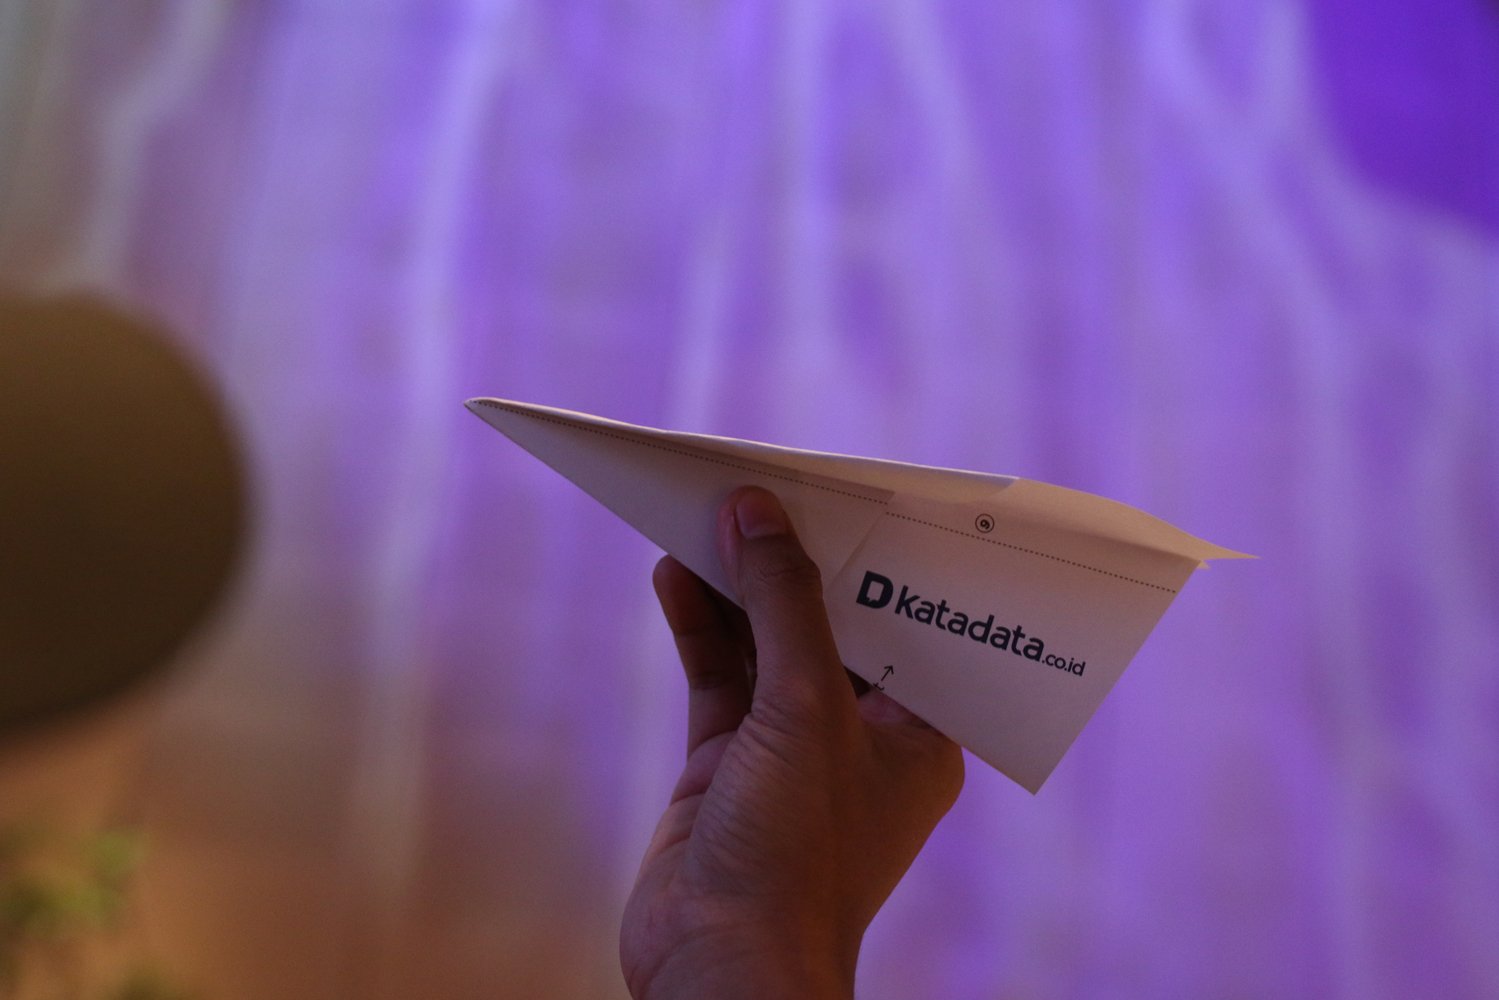 Pesawat kertas Katadata yang siap diterbangkan dengan logo baru tercetak.